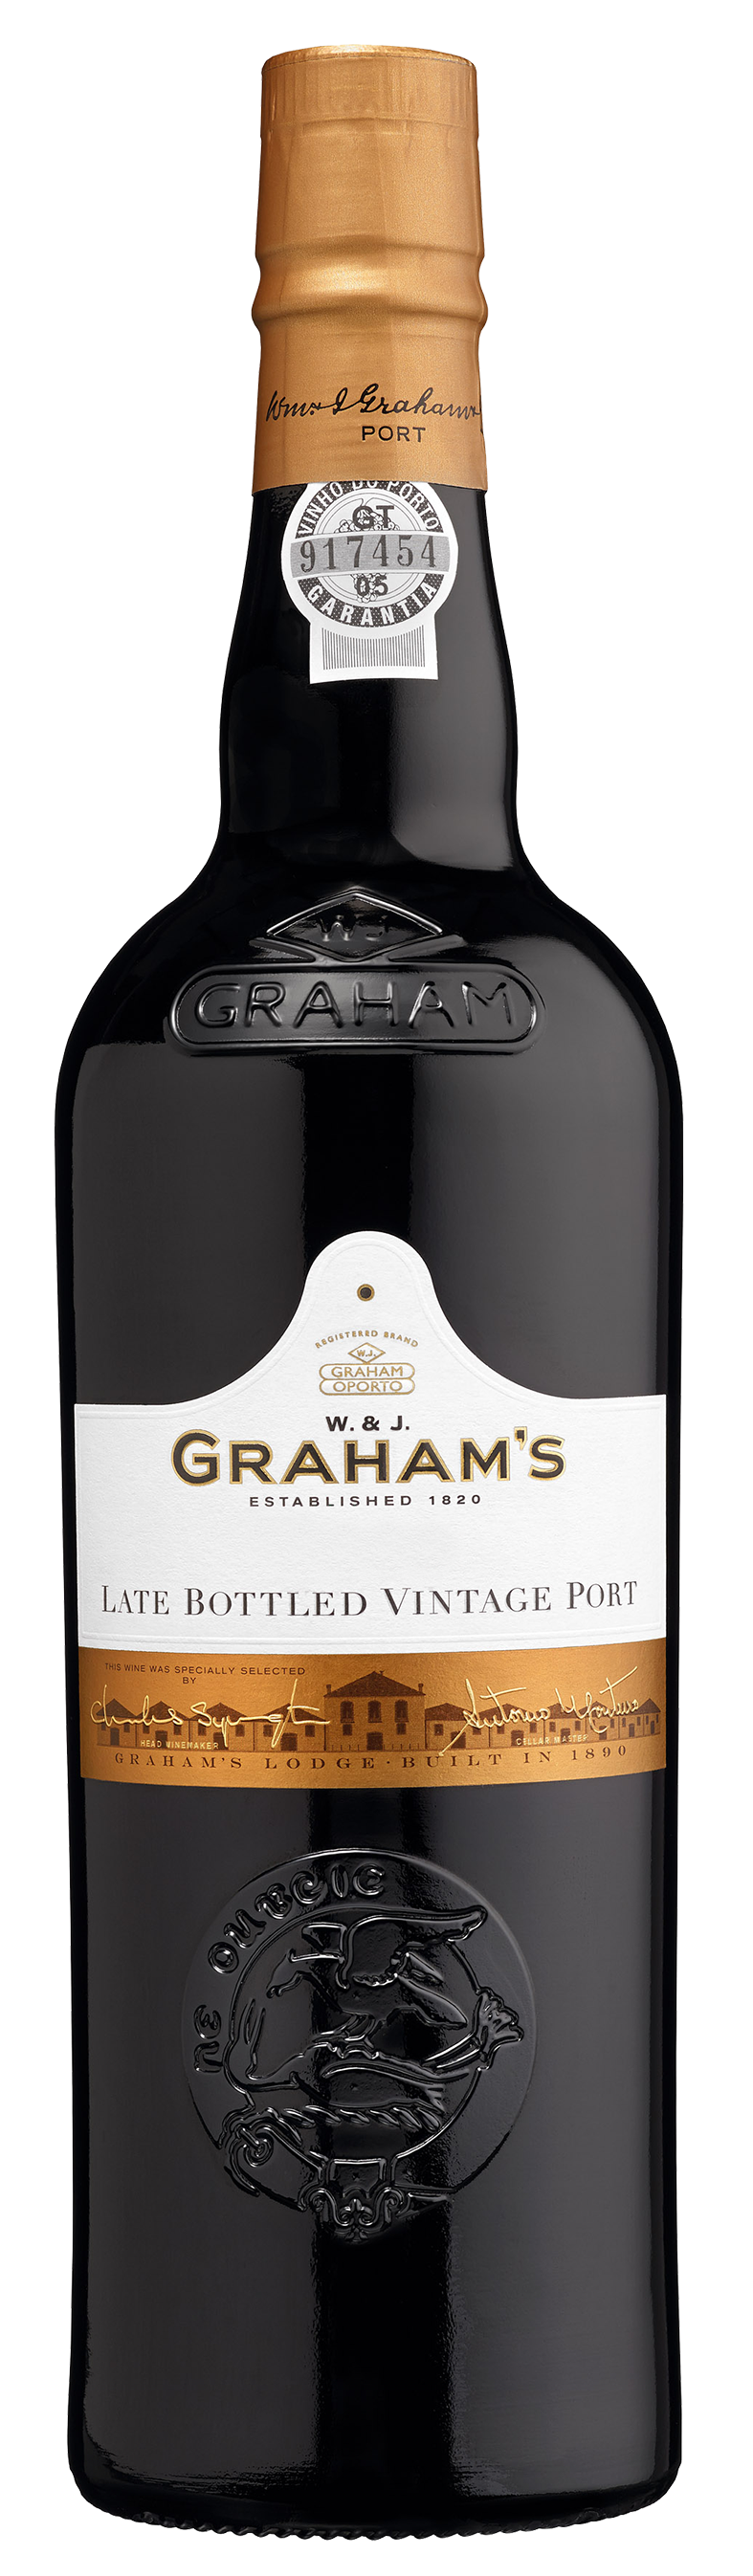 Graham‘s LBV Port Late Bottled Vintage rot